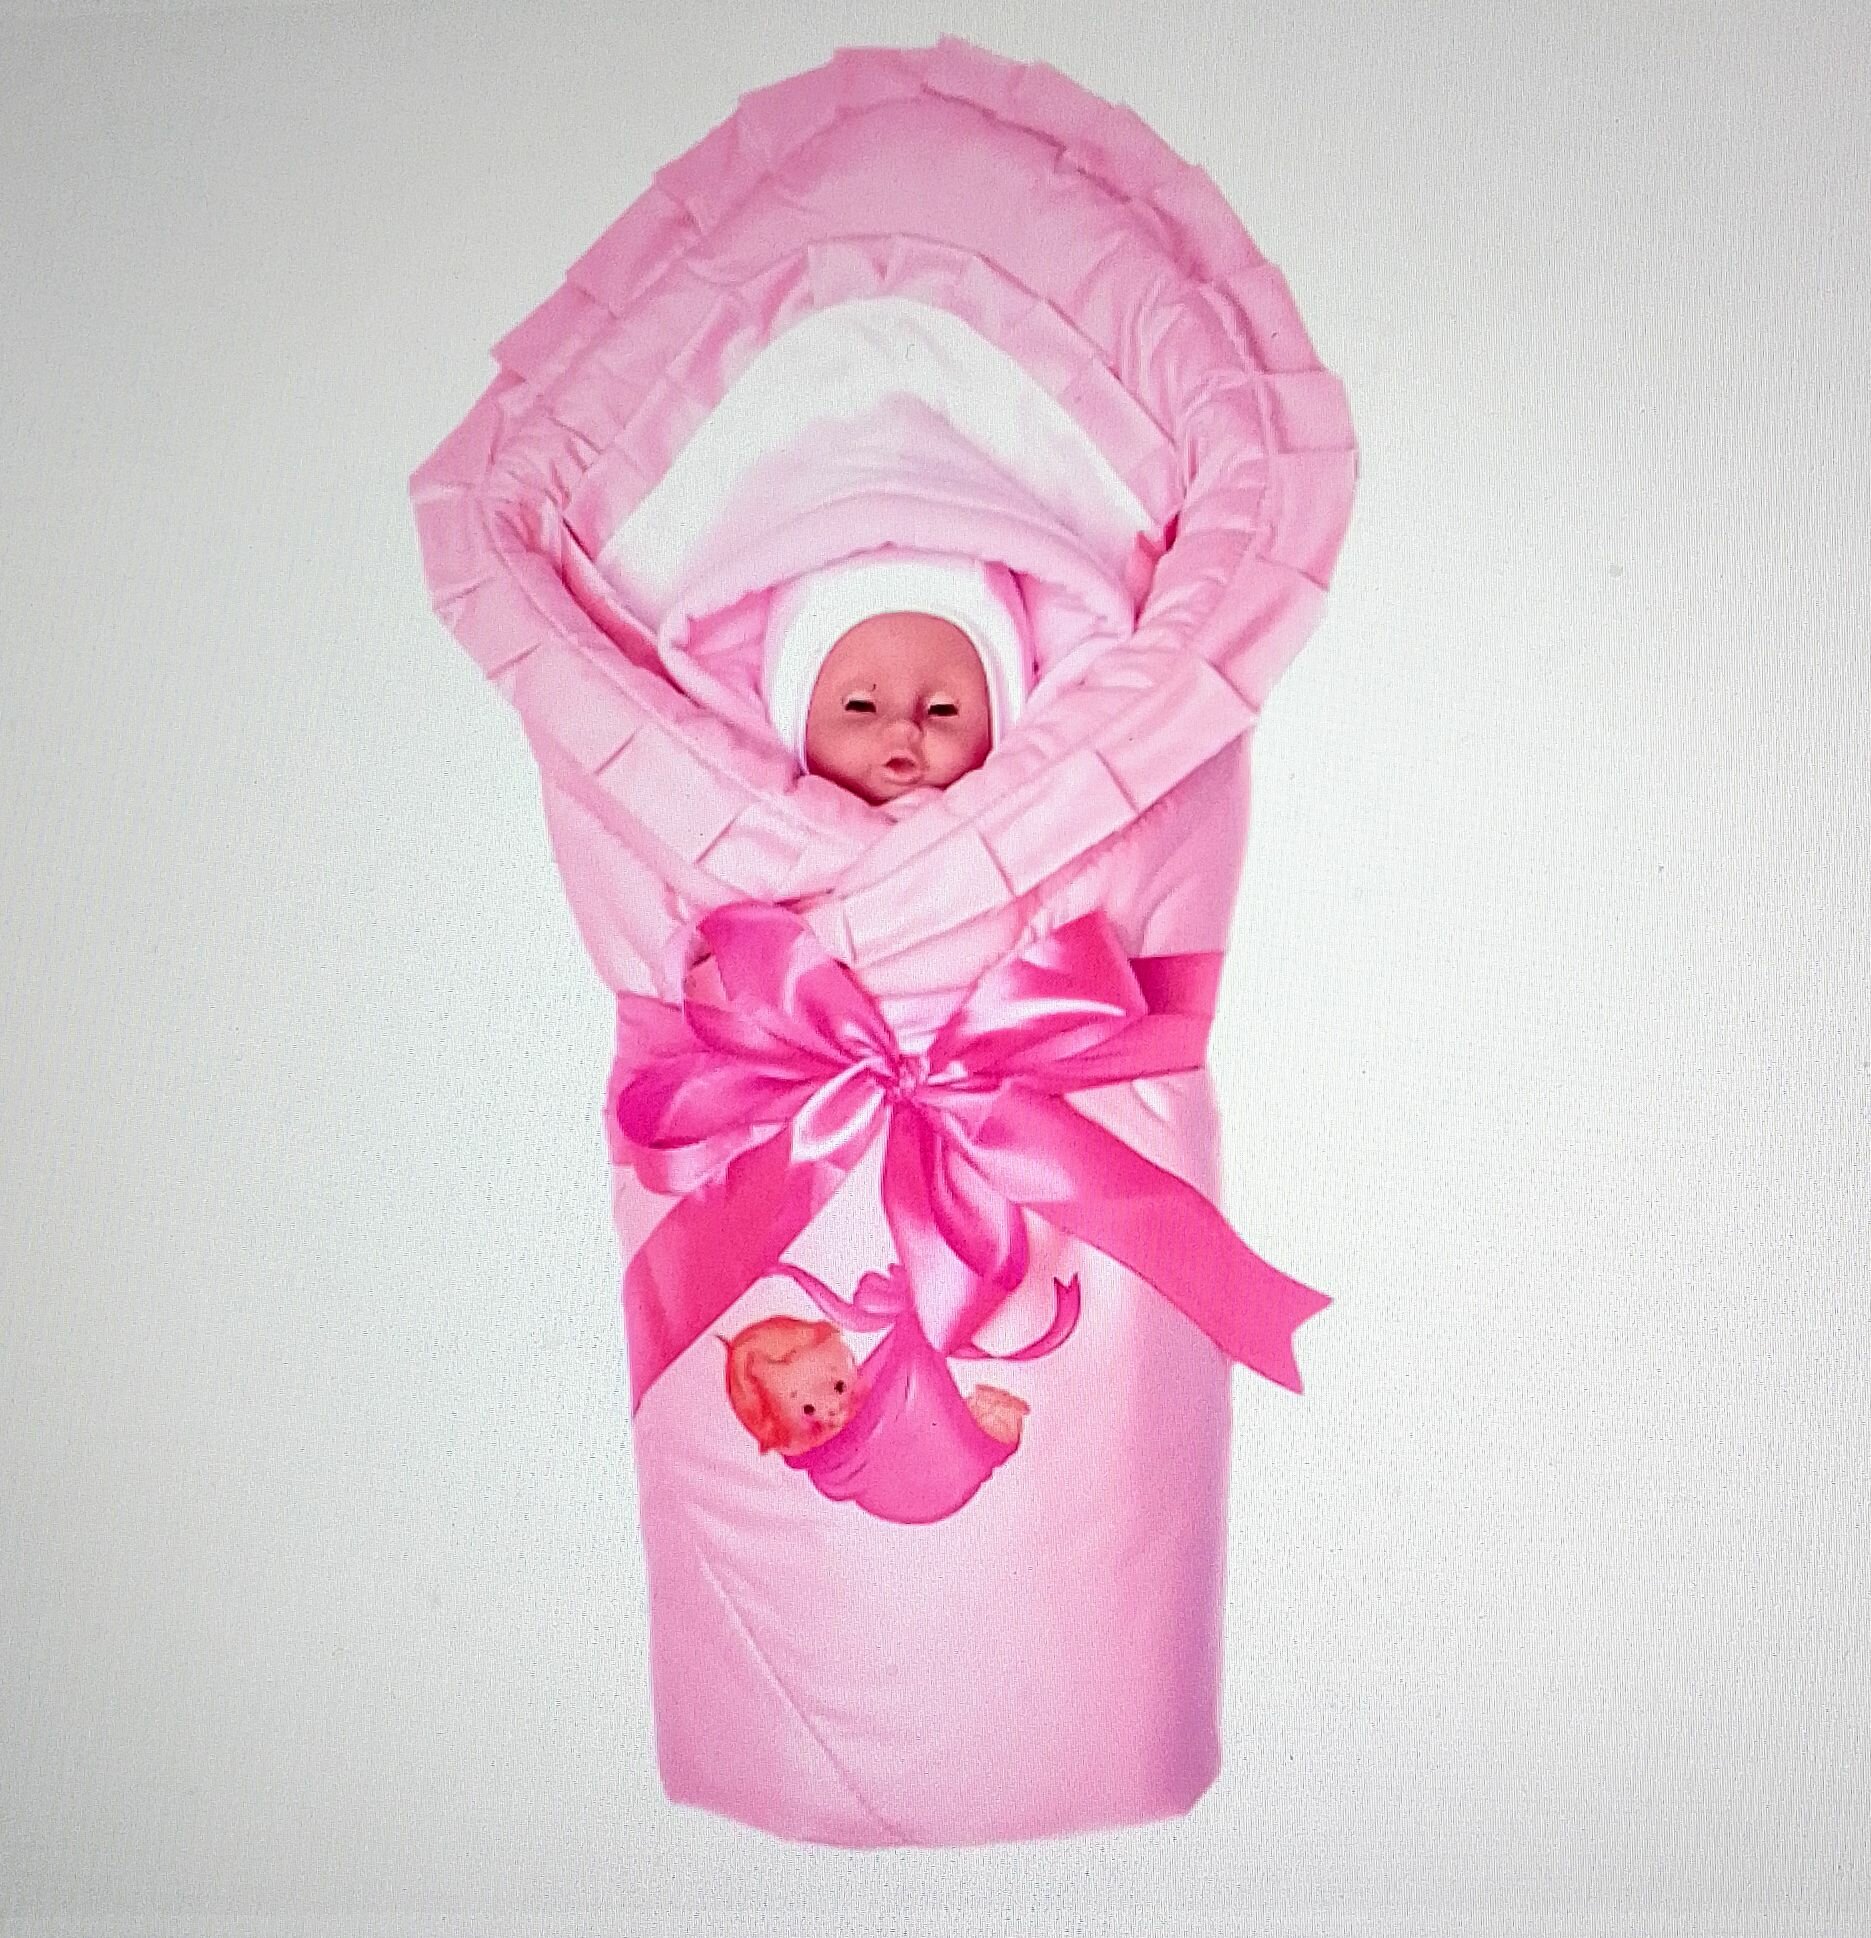 Конверт Babyglory для девочки на выписку "Непоседа", зима, K305, розовый Т